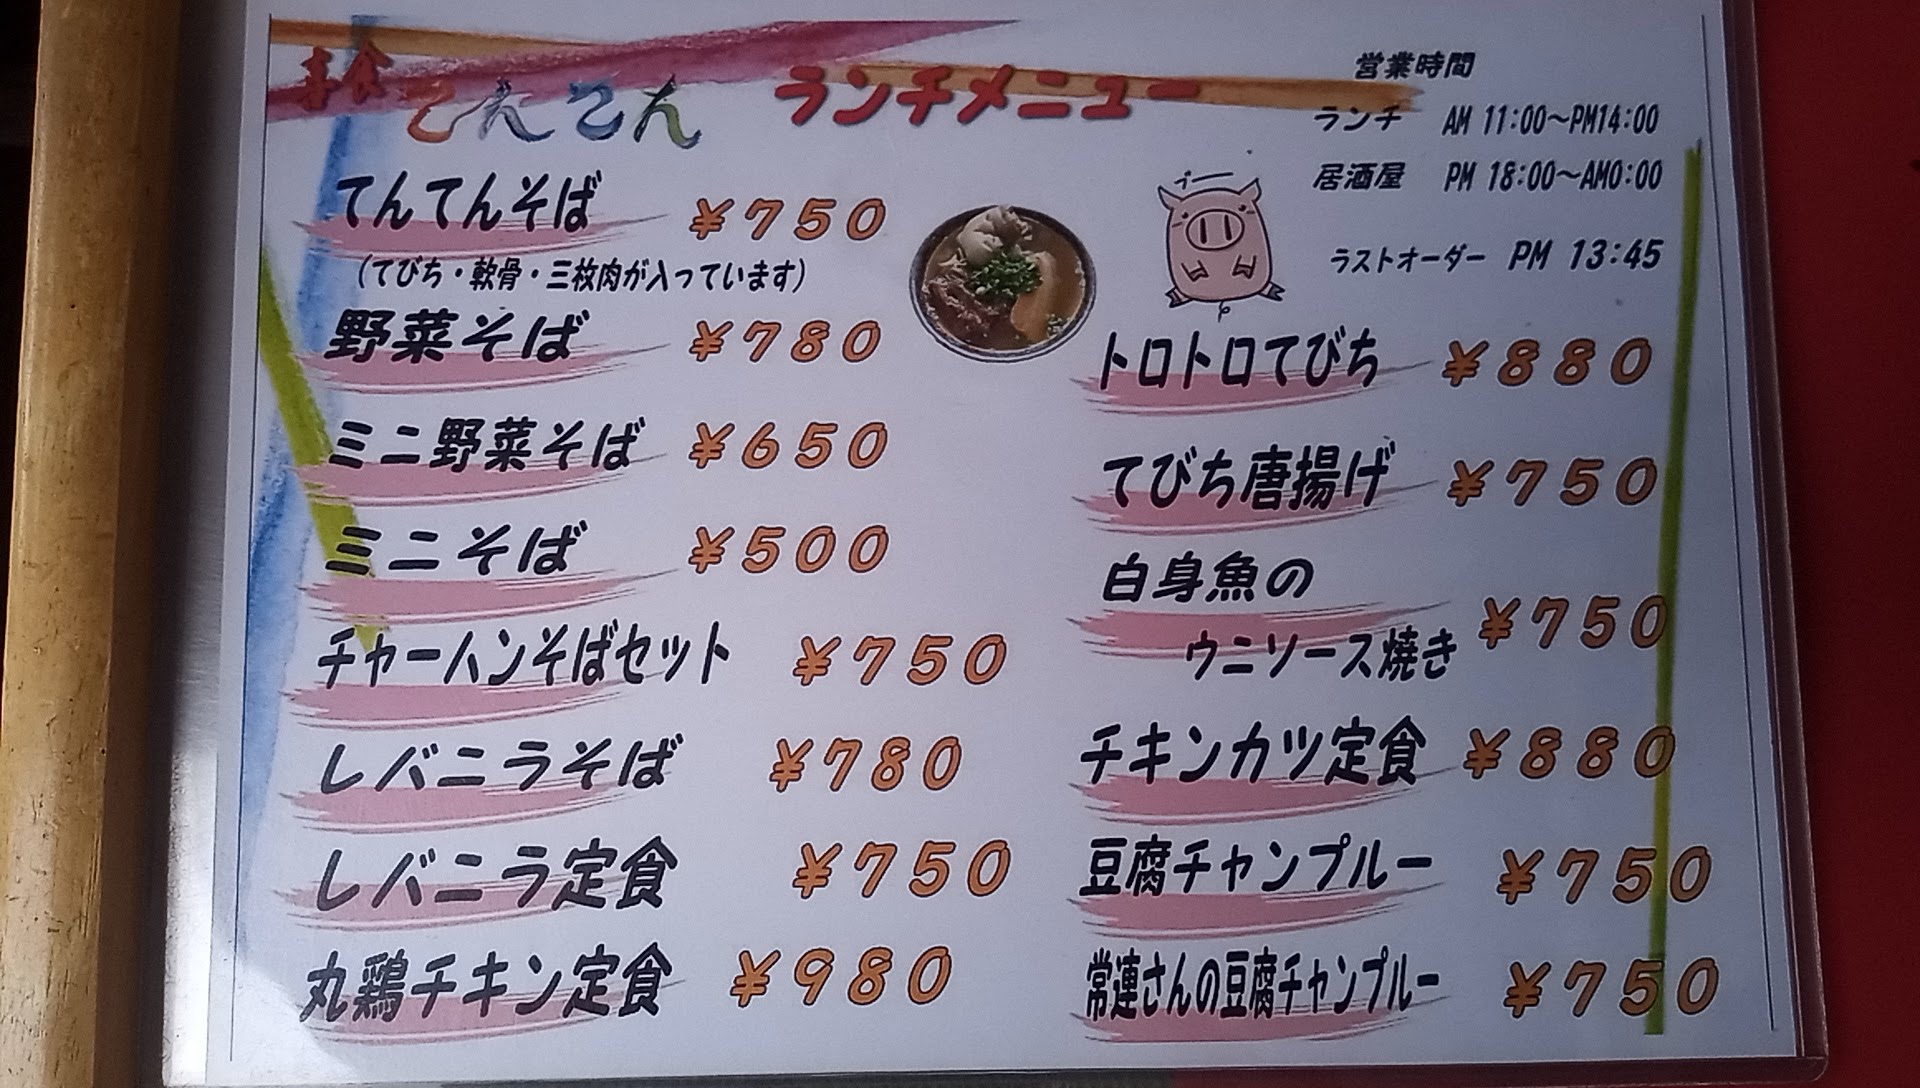 the lunch menu at Kishoku Tenten